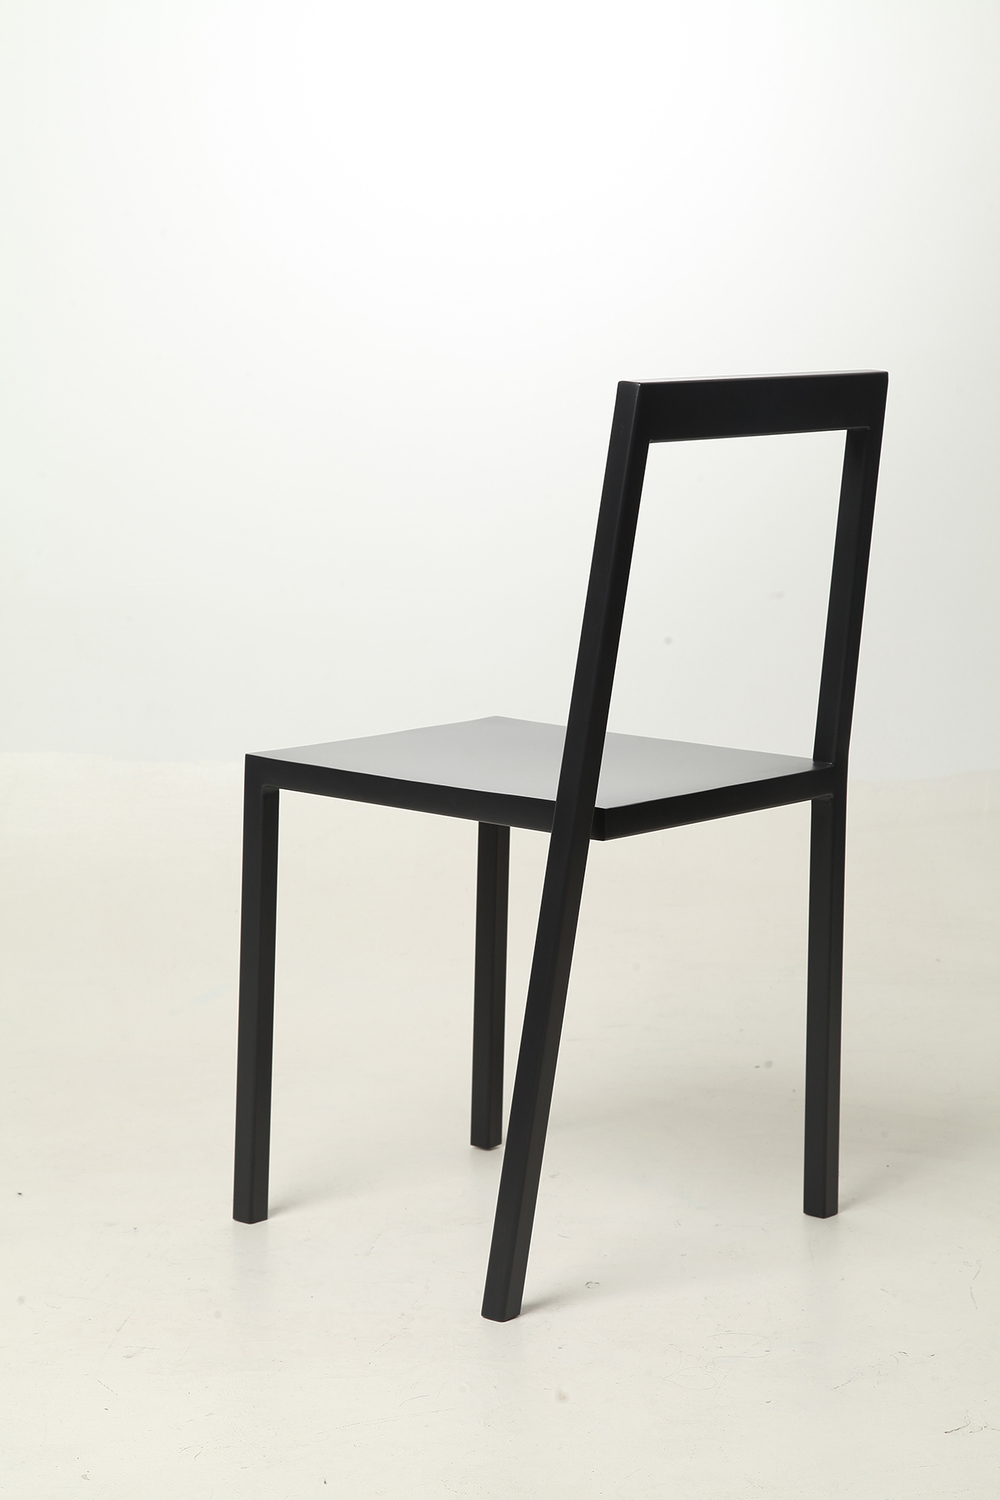 Chair 3/4. image courtesy from Sandro Lominashvil